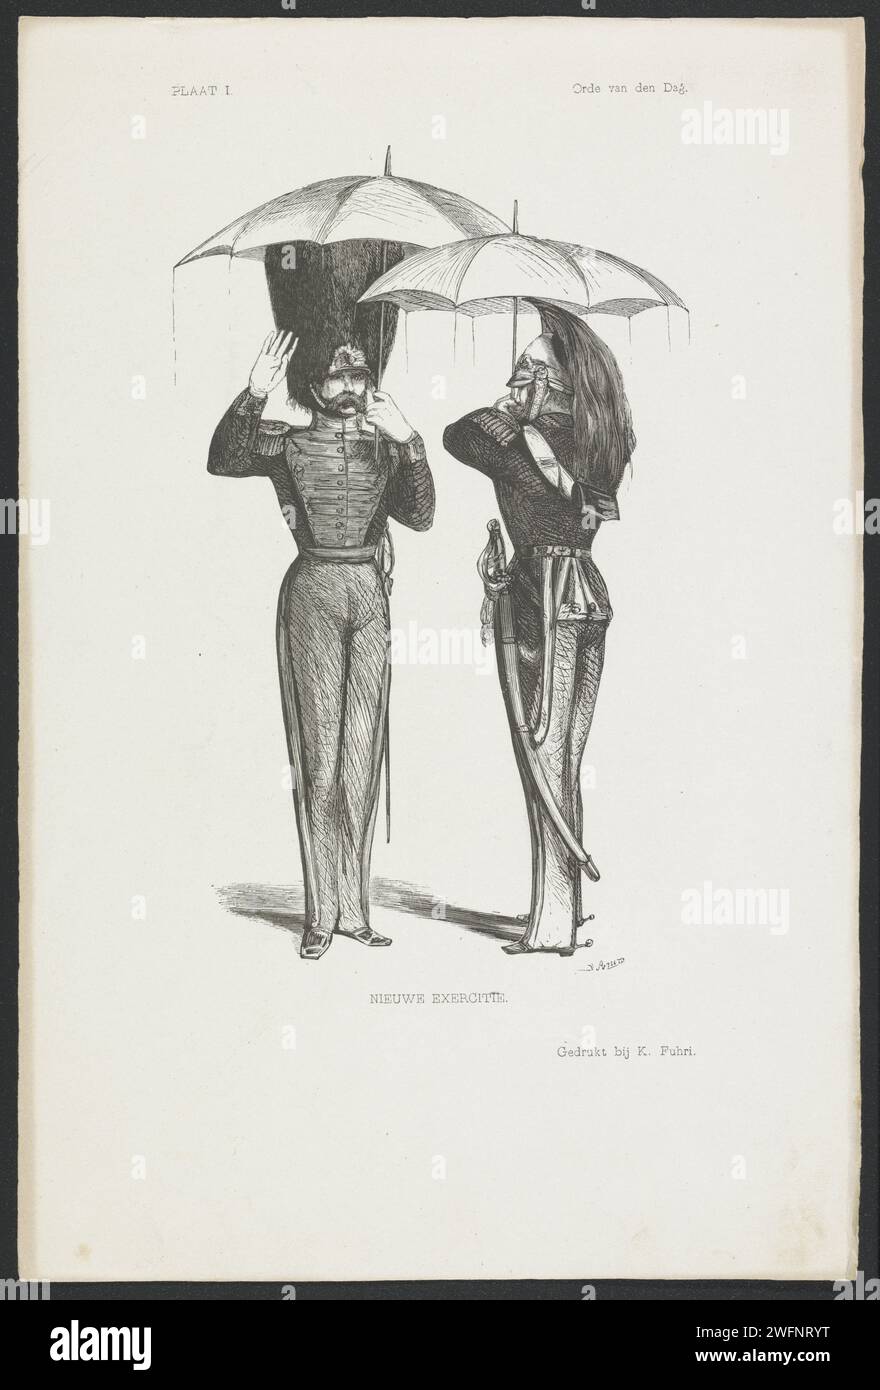 Neue Übung, Rombertus Julianus van Arum, 1847 drucken zwei Soldaten mit nassen Regenschirmen begrüßen sich. Druckerei: Amsterdamprinter: Der Haager Buchdruck für militärische Grußdrucke. Regenschirm Stockfoto